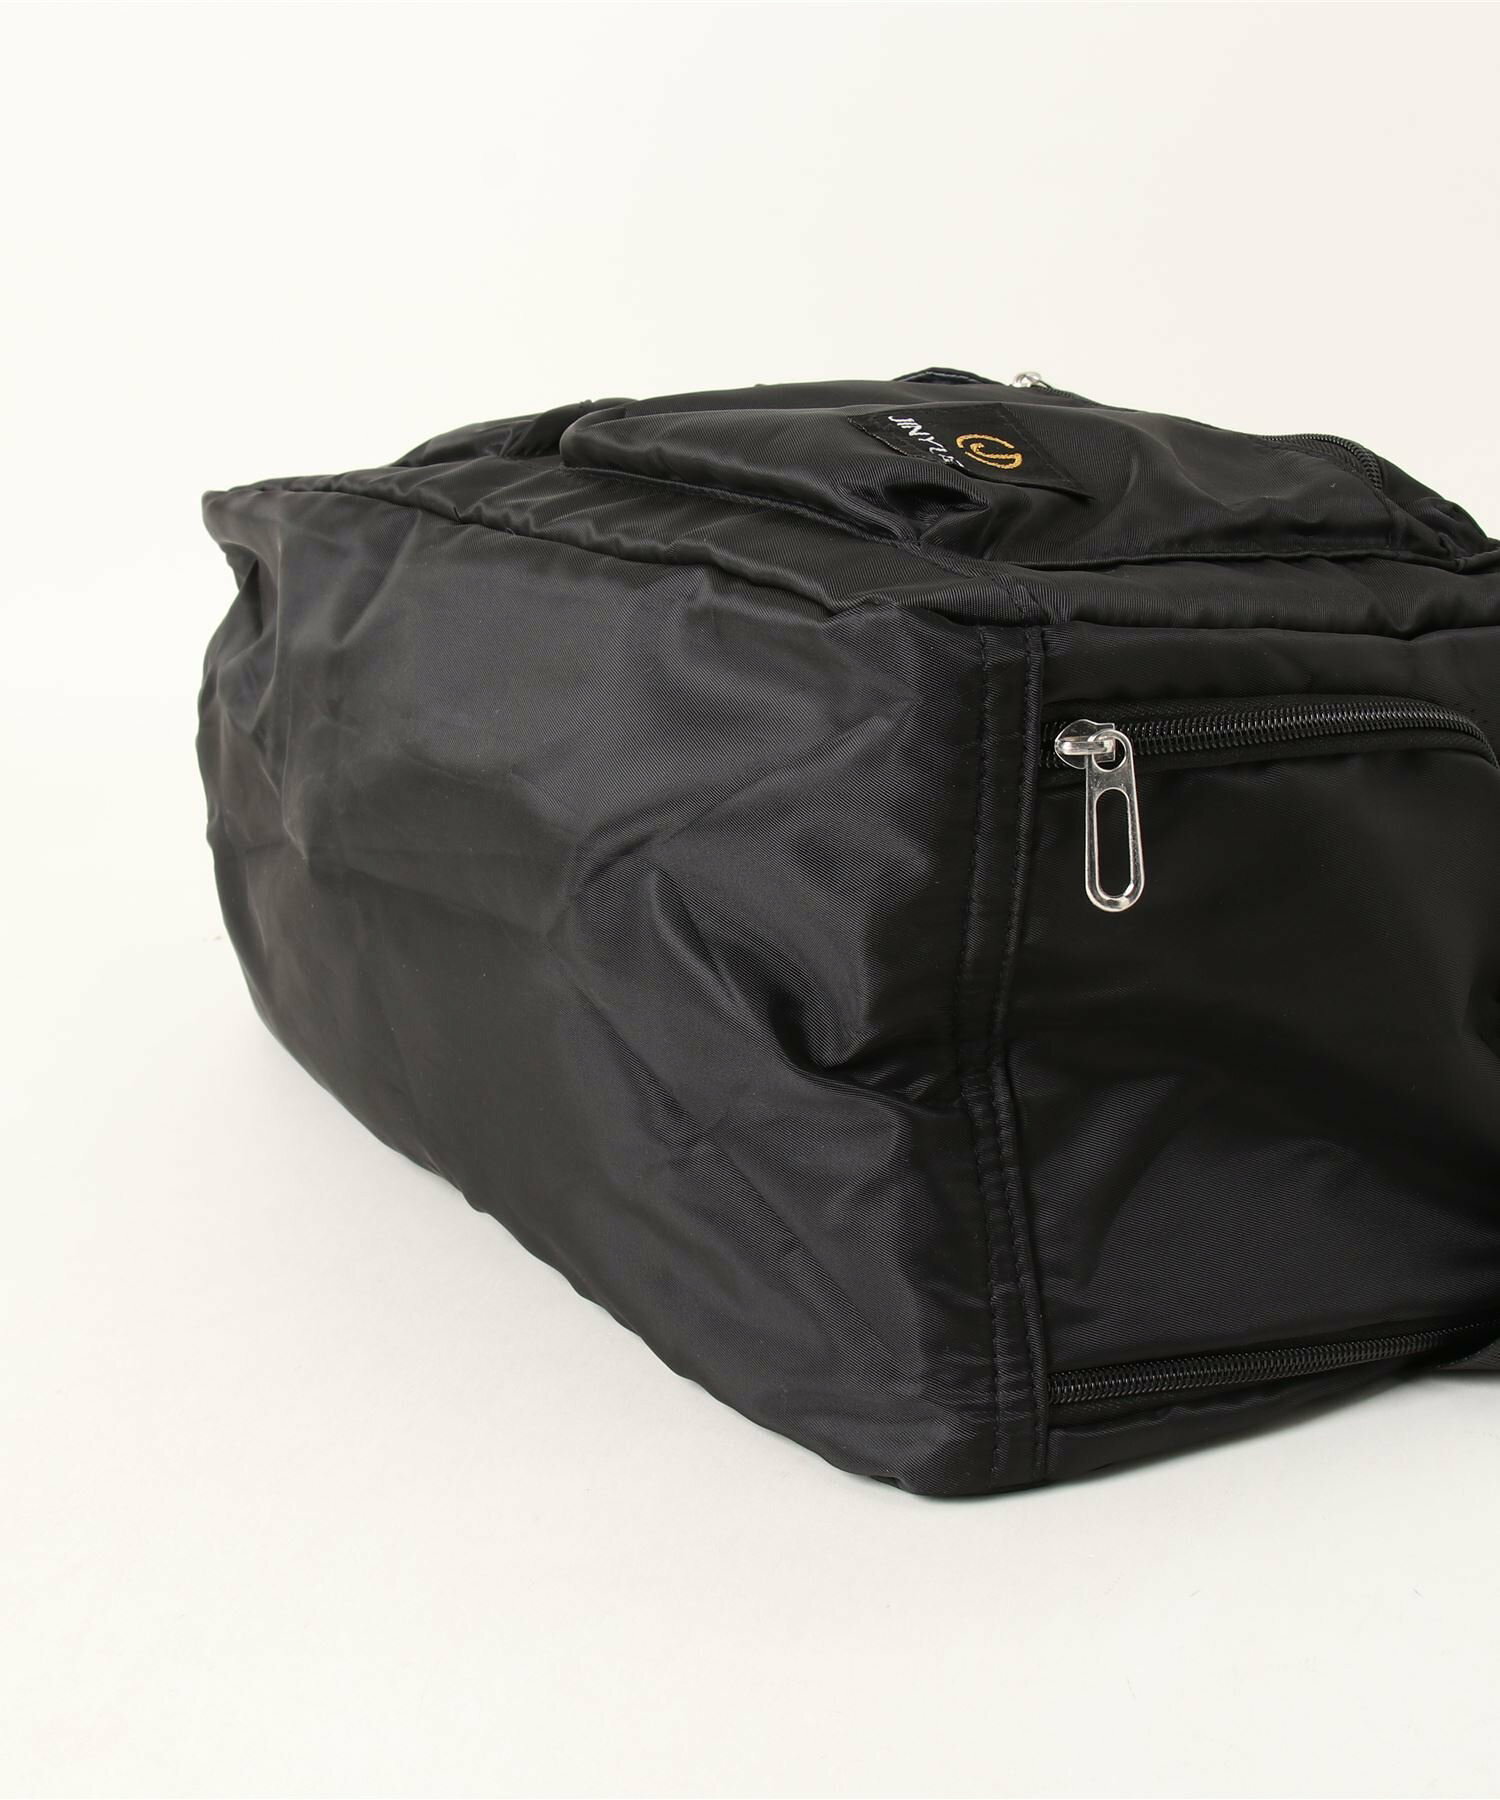 【男女兼用】2WAY 大容量ボックス型カジュアルボストンバッグ/ショルダーバッグ